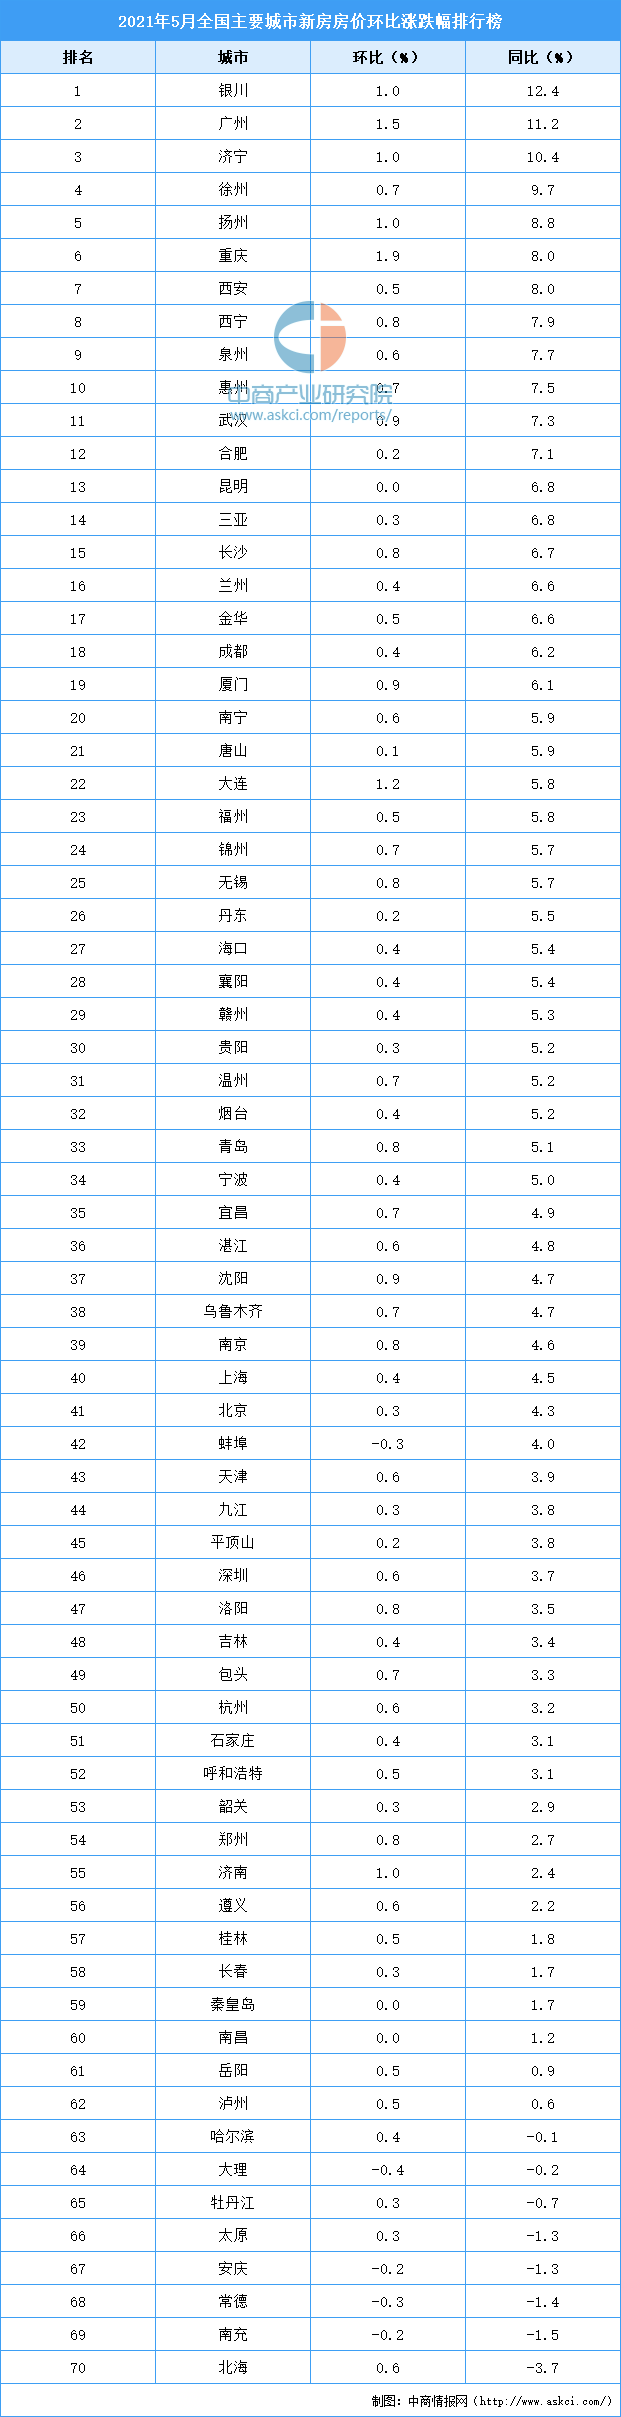 广州房价排行_2021年上半年新房房价涨跌排行榜:广州领涨全国银川位居第二(图)